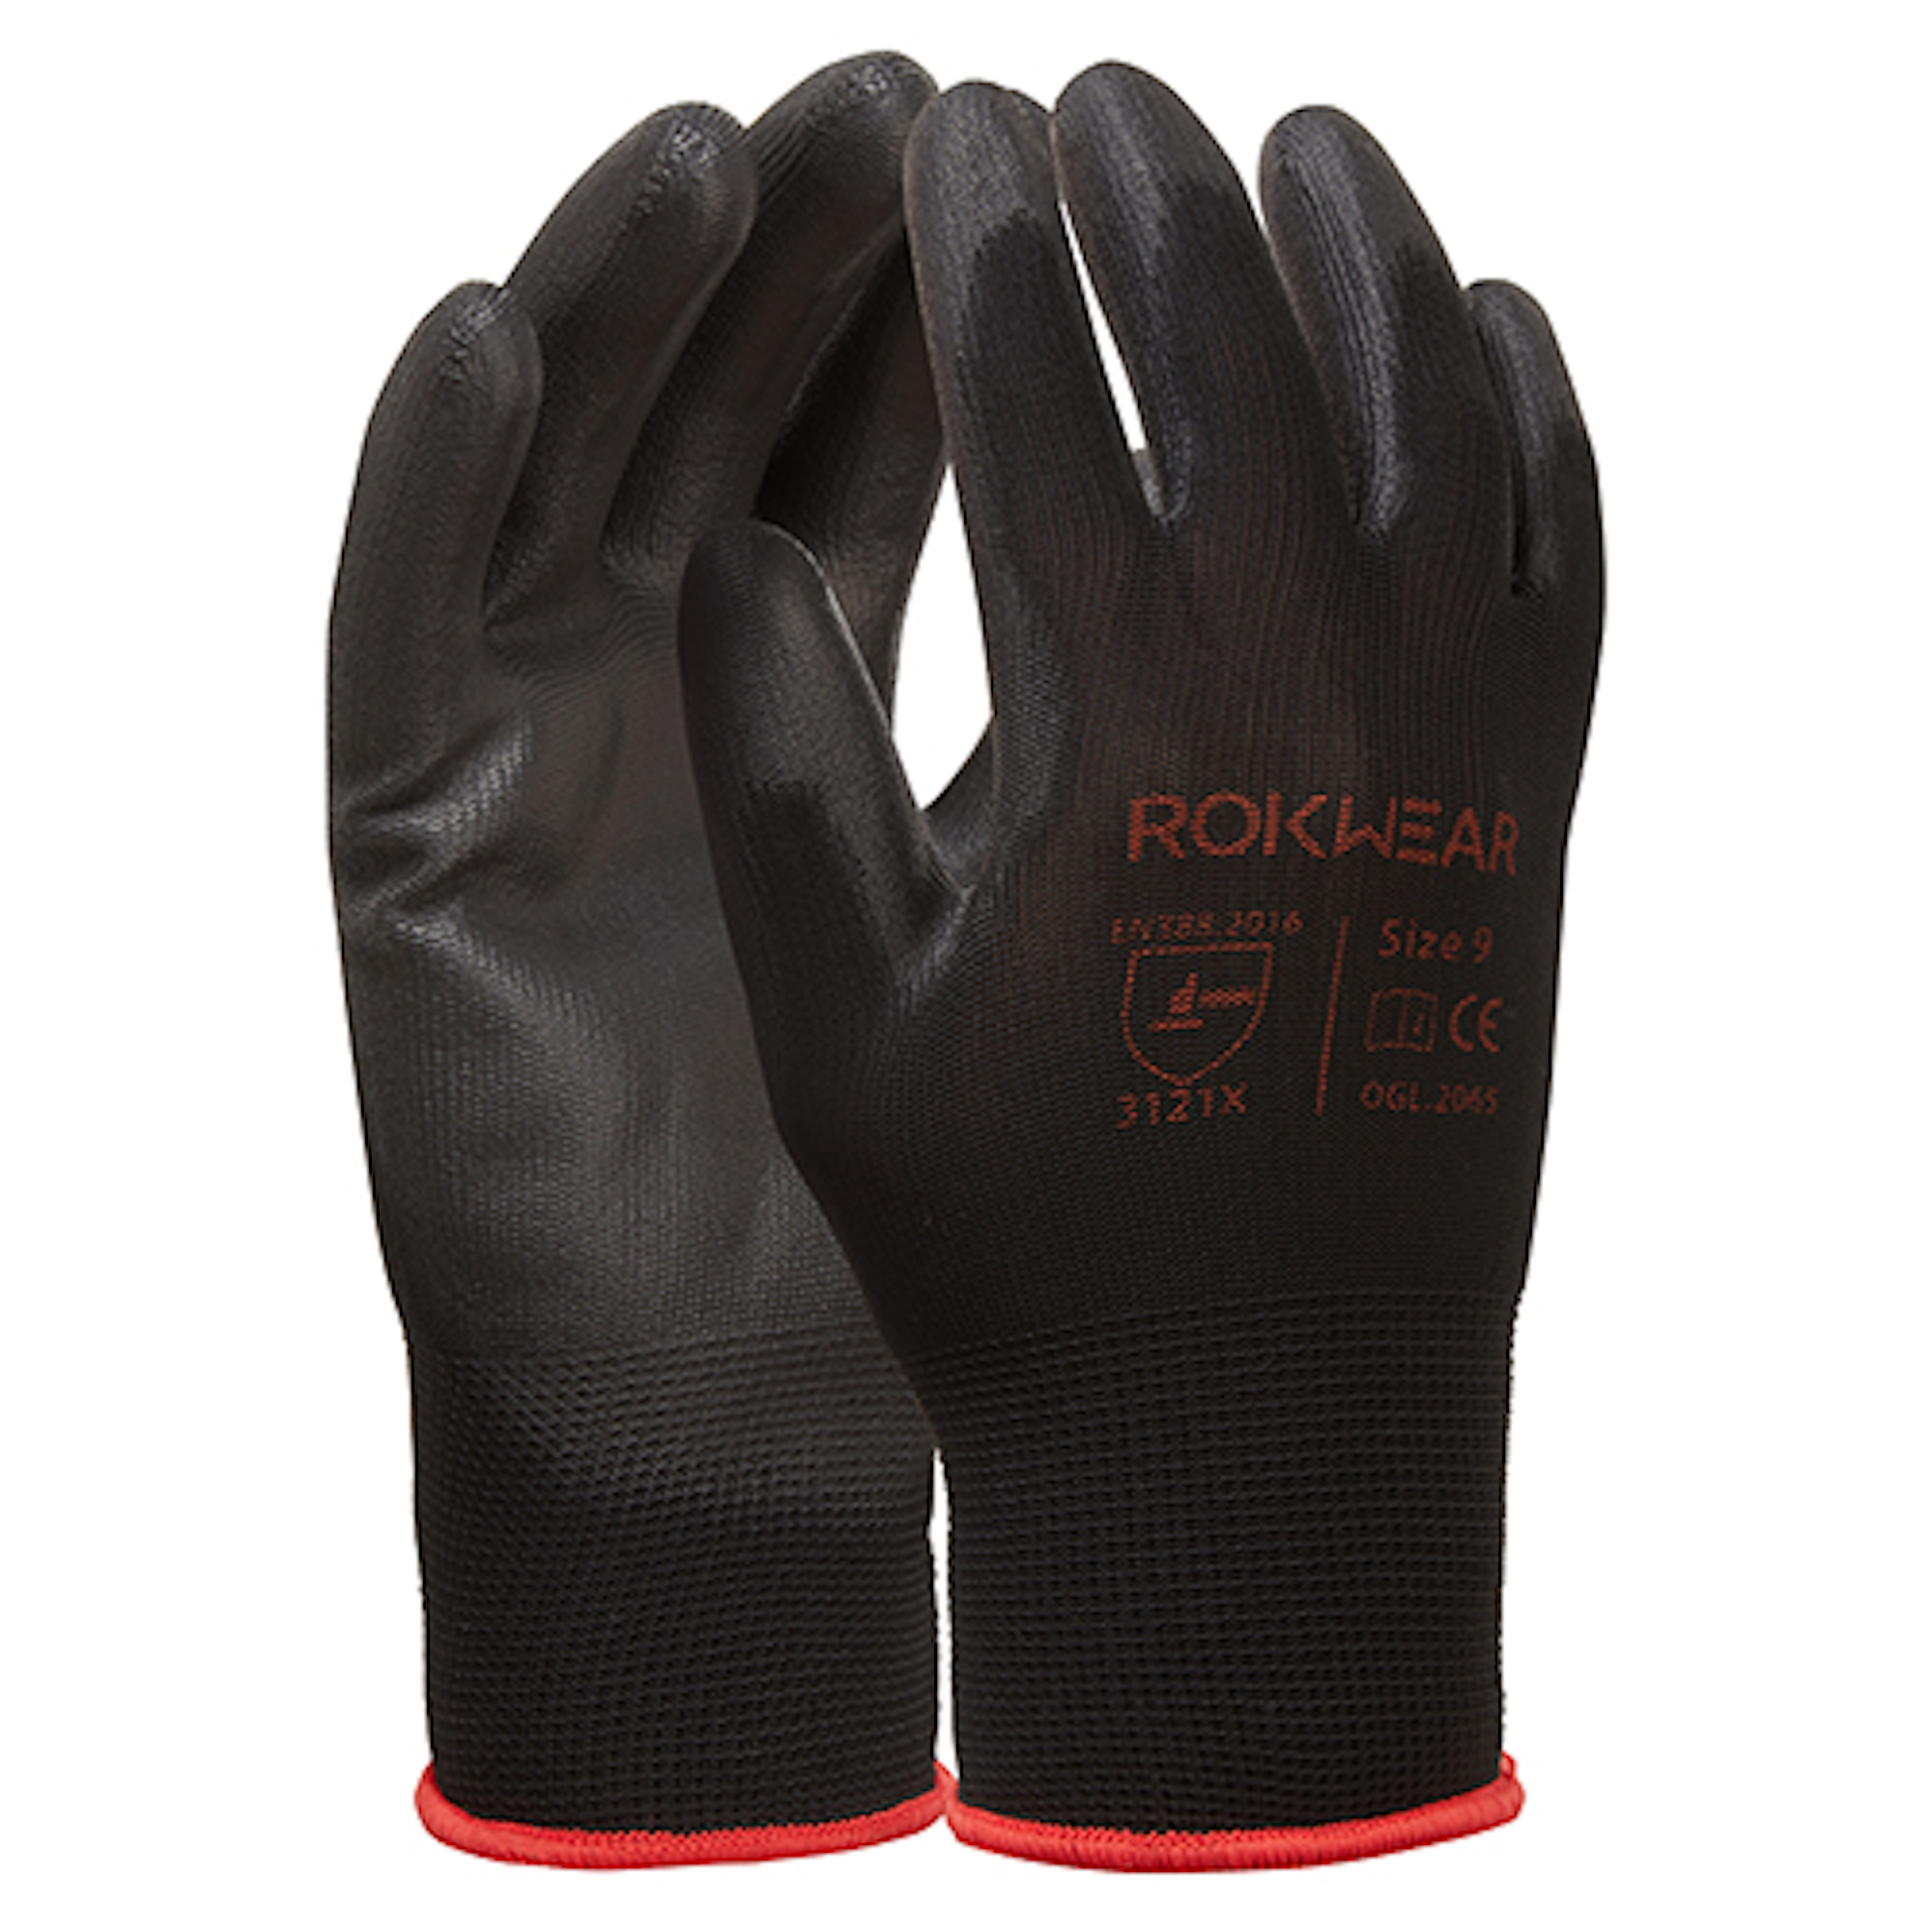 Foraker, PU-Coated, Polyurethane Construction Gloves